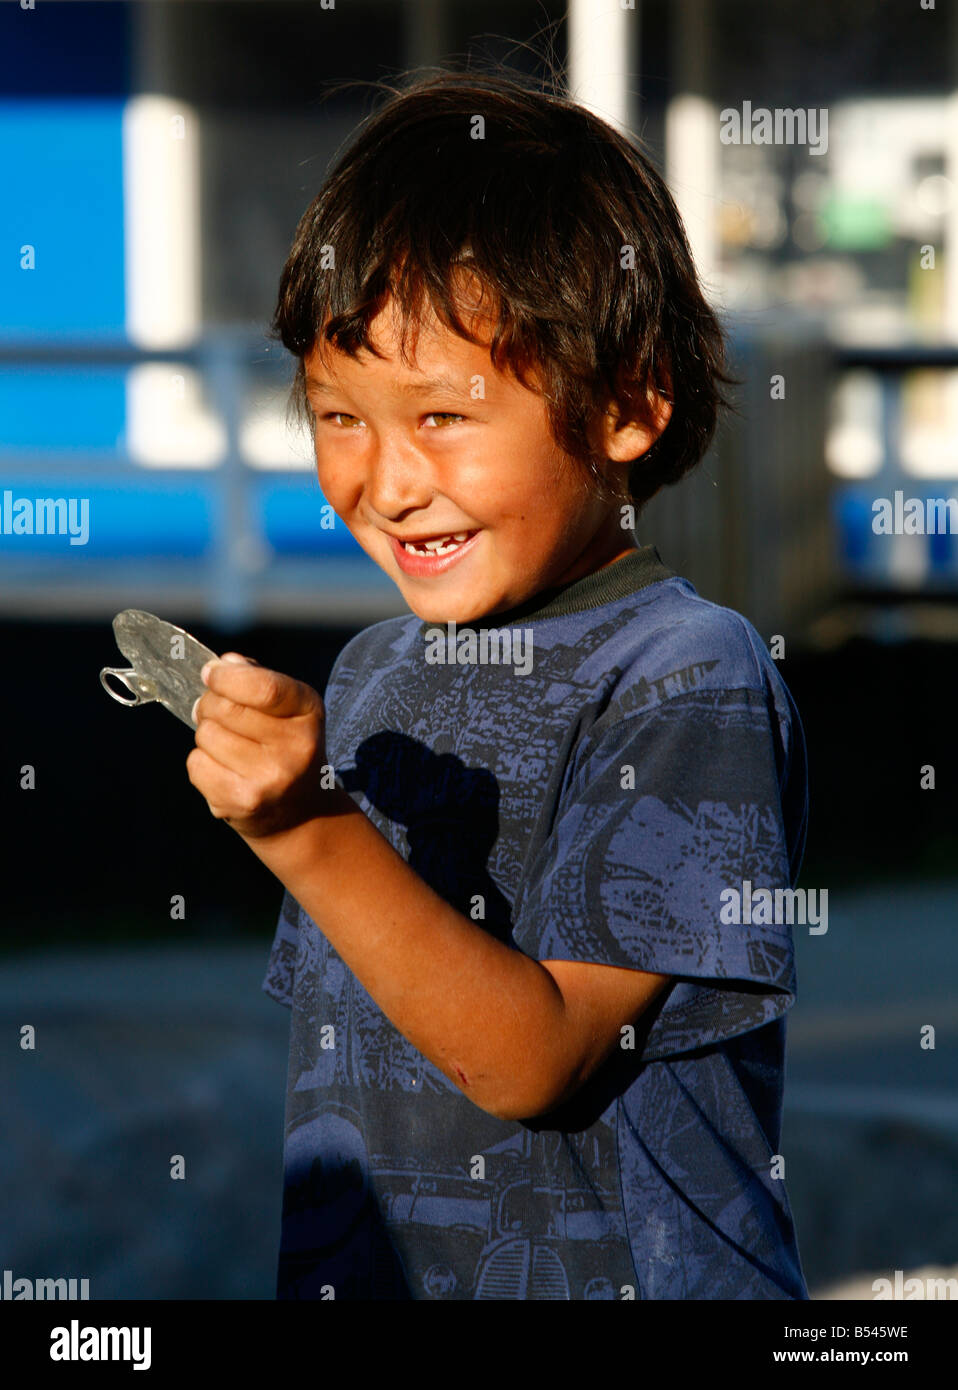 Août 2008 - Les enfants à Ilulissat Groenland Banque D'Images